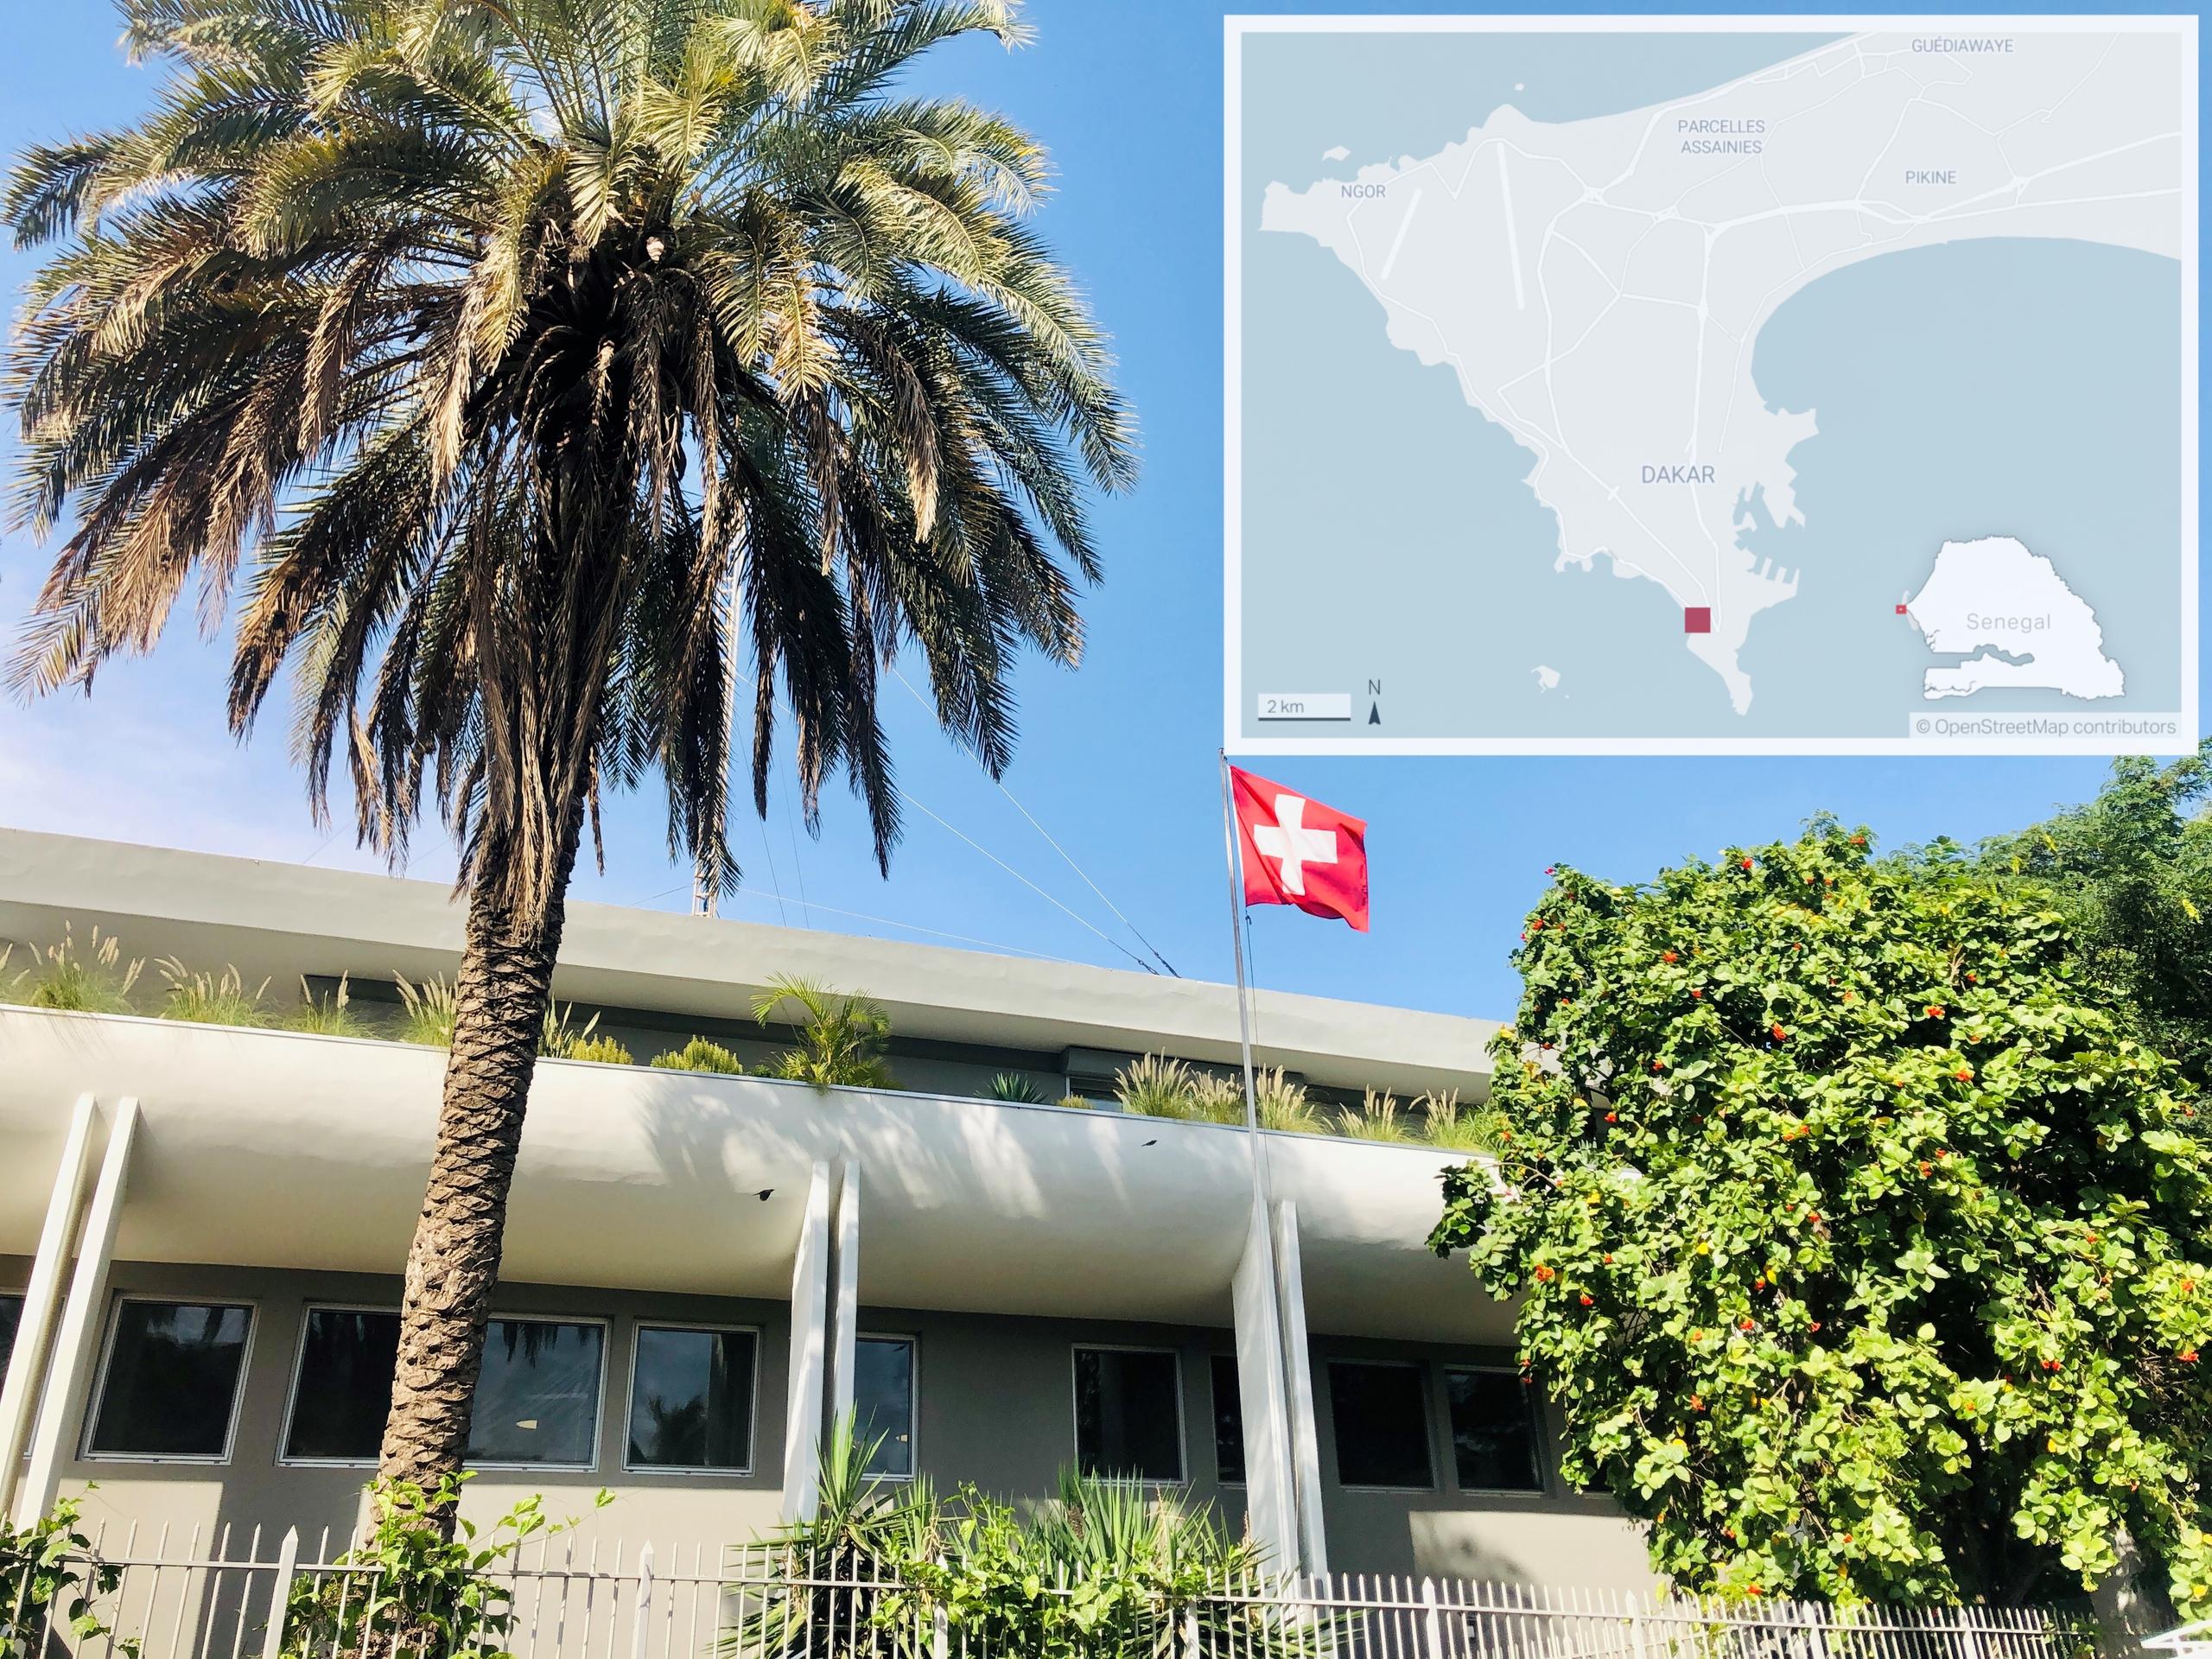 Façade de l’ambassade de Suisse à Dakar, un palmier côtoie le drapeau suisse.